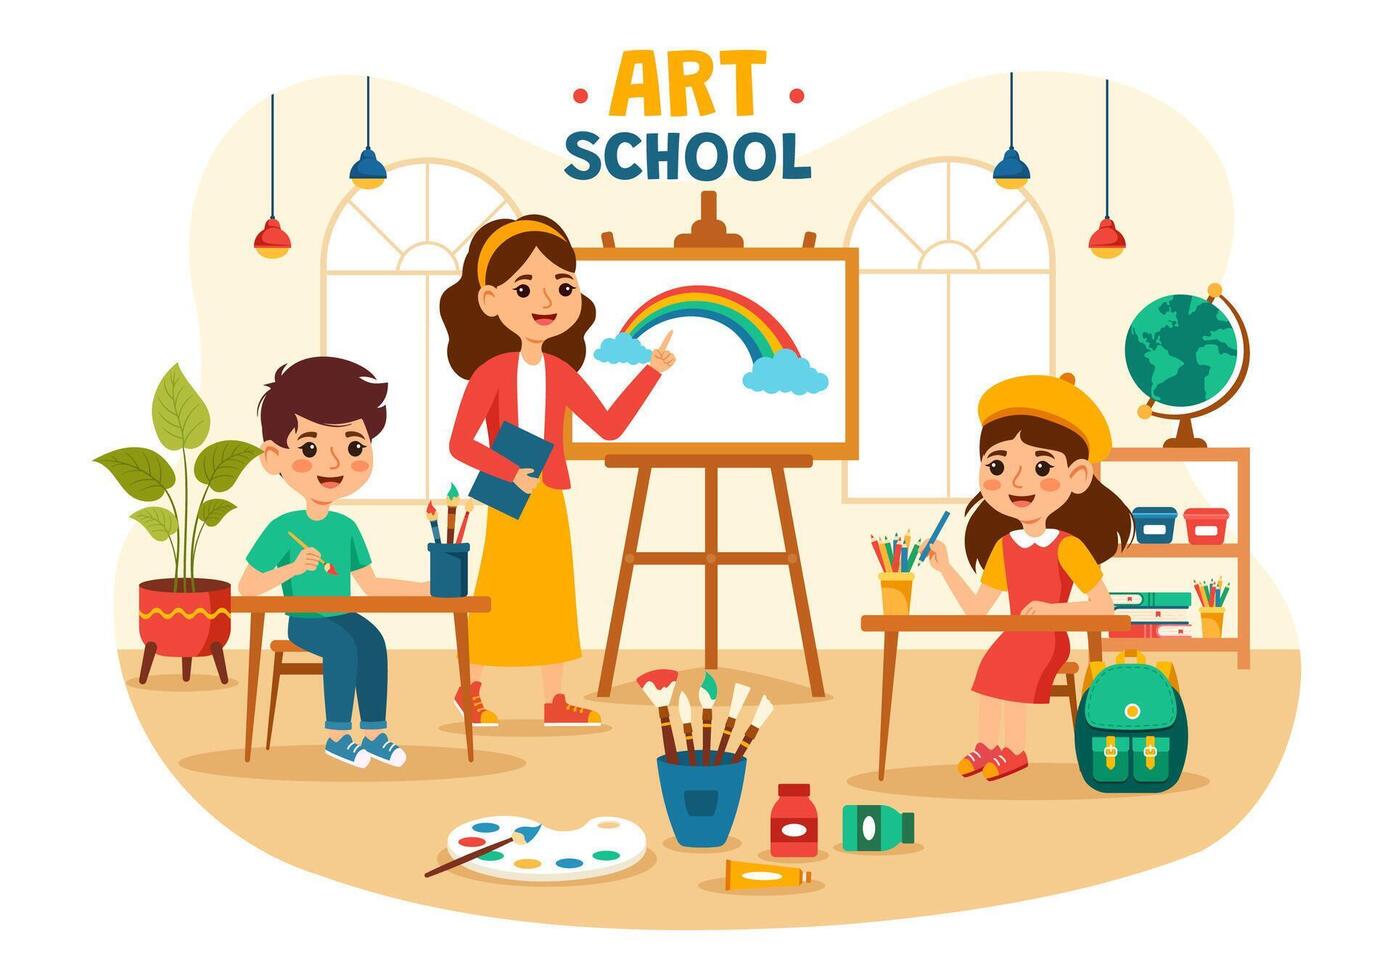 konst skola vektor illustration med barn av målning med leva modell eller objekt använder sig av verktyg och Utrustning i platt tecknad serie bakgrund design